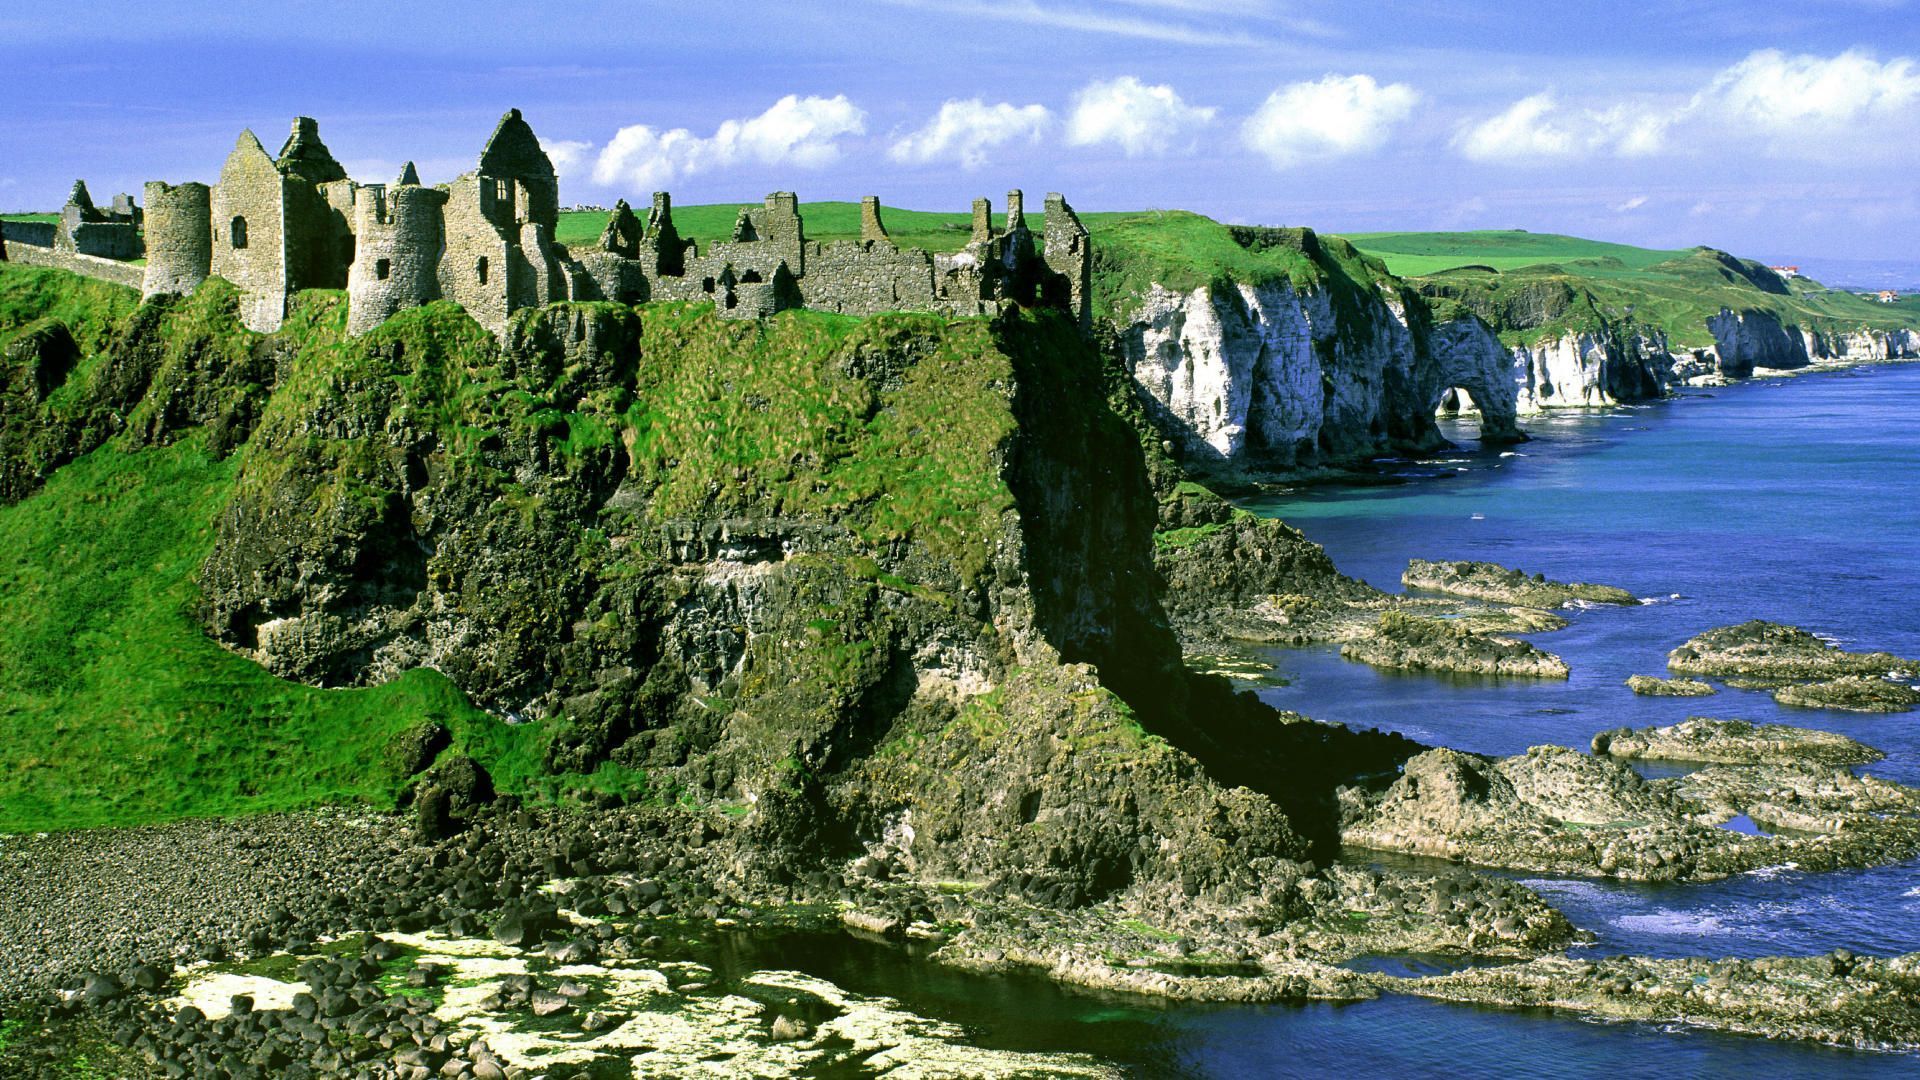 Ireland luôn là điểm sáng về cảnh đẹp với những cảnh quan thiên nhiên tuyệt đẹp. Ireland Landscape HD Wallpaper mang đến cho bạn những hình ảnh tuyệt vời về những thảm cỏ xanh rực, những ngôi nhà cổ kính và du thuyền trên những con sông yên bình. Hãy tải về ngay để cảm nhận điều đó.